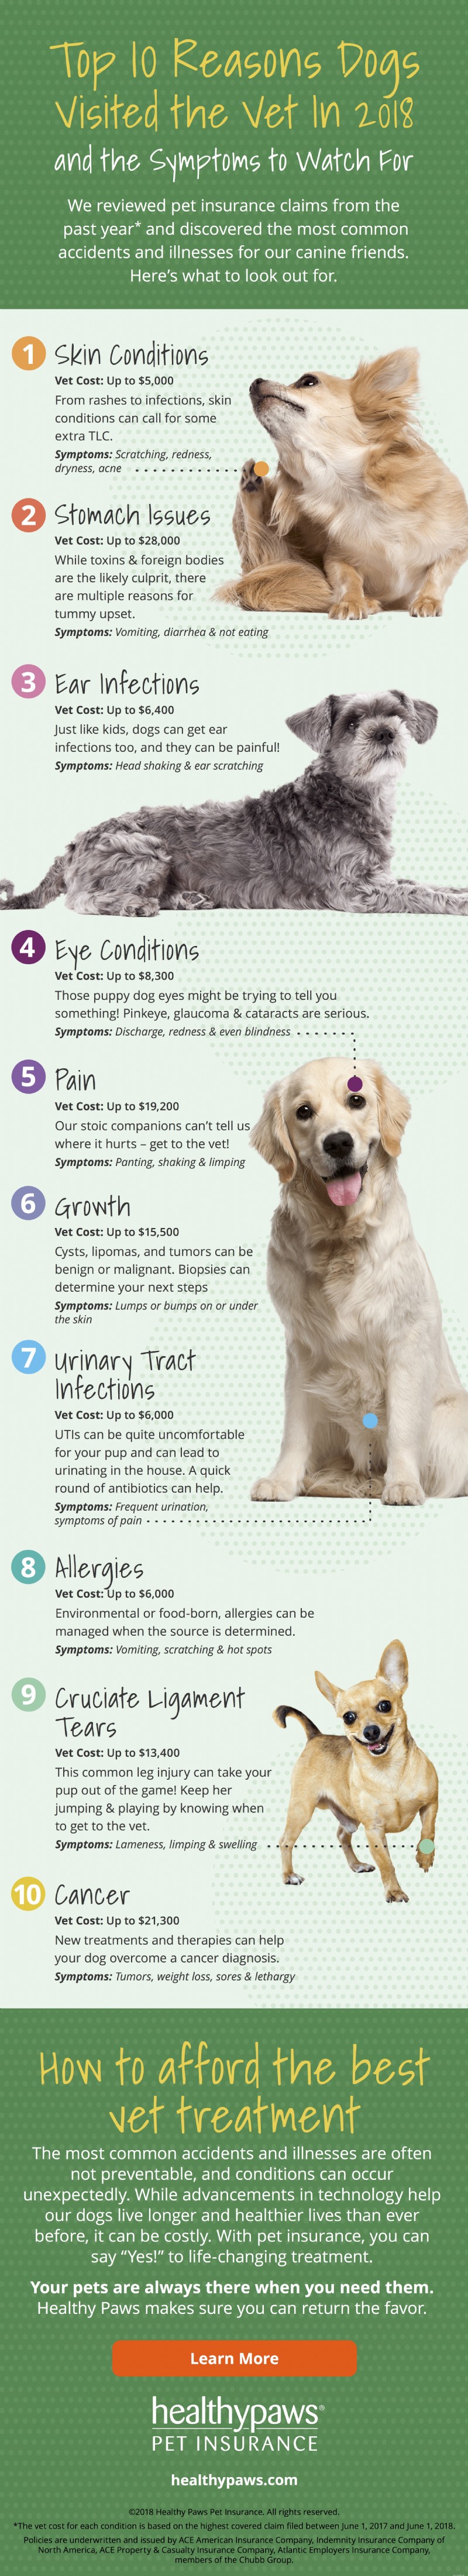 10 hlavních důvodů, proč psi navštěvují veterináře [Infographic]